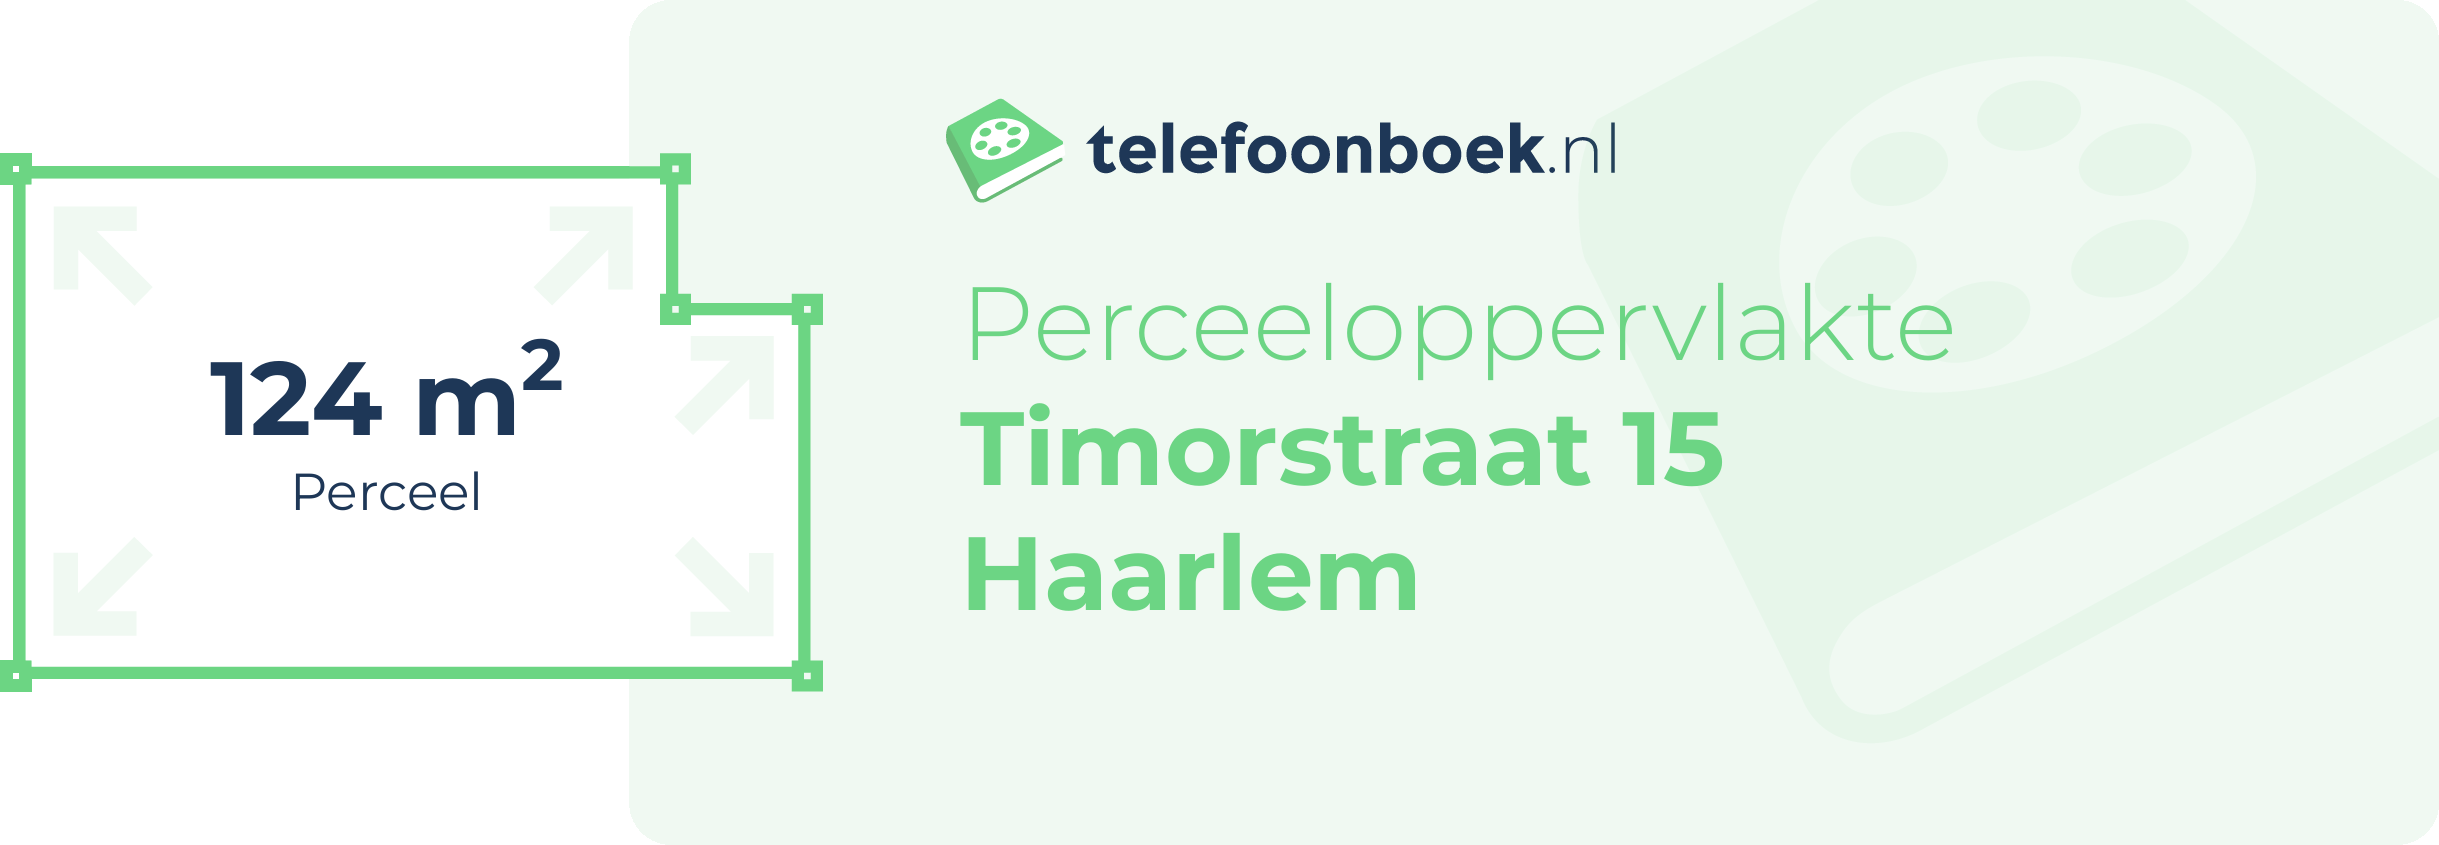 Perceeloppervlakte Timorstraat 15 Haarlem